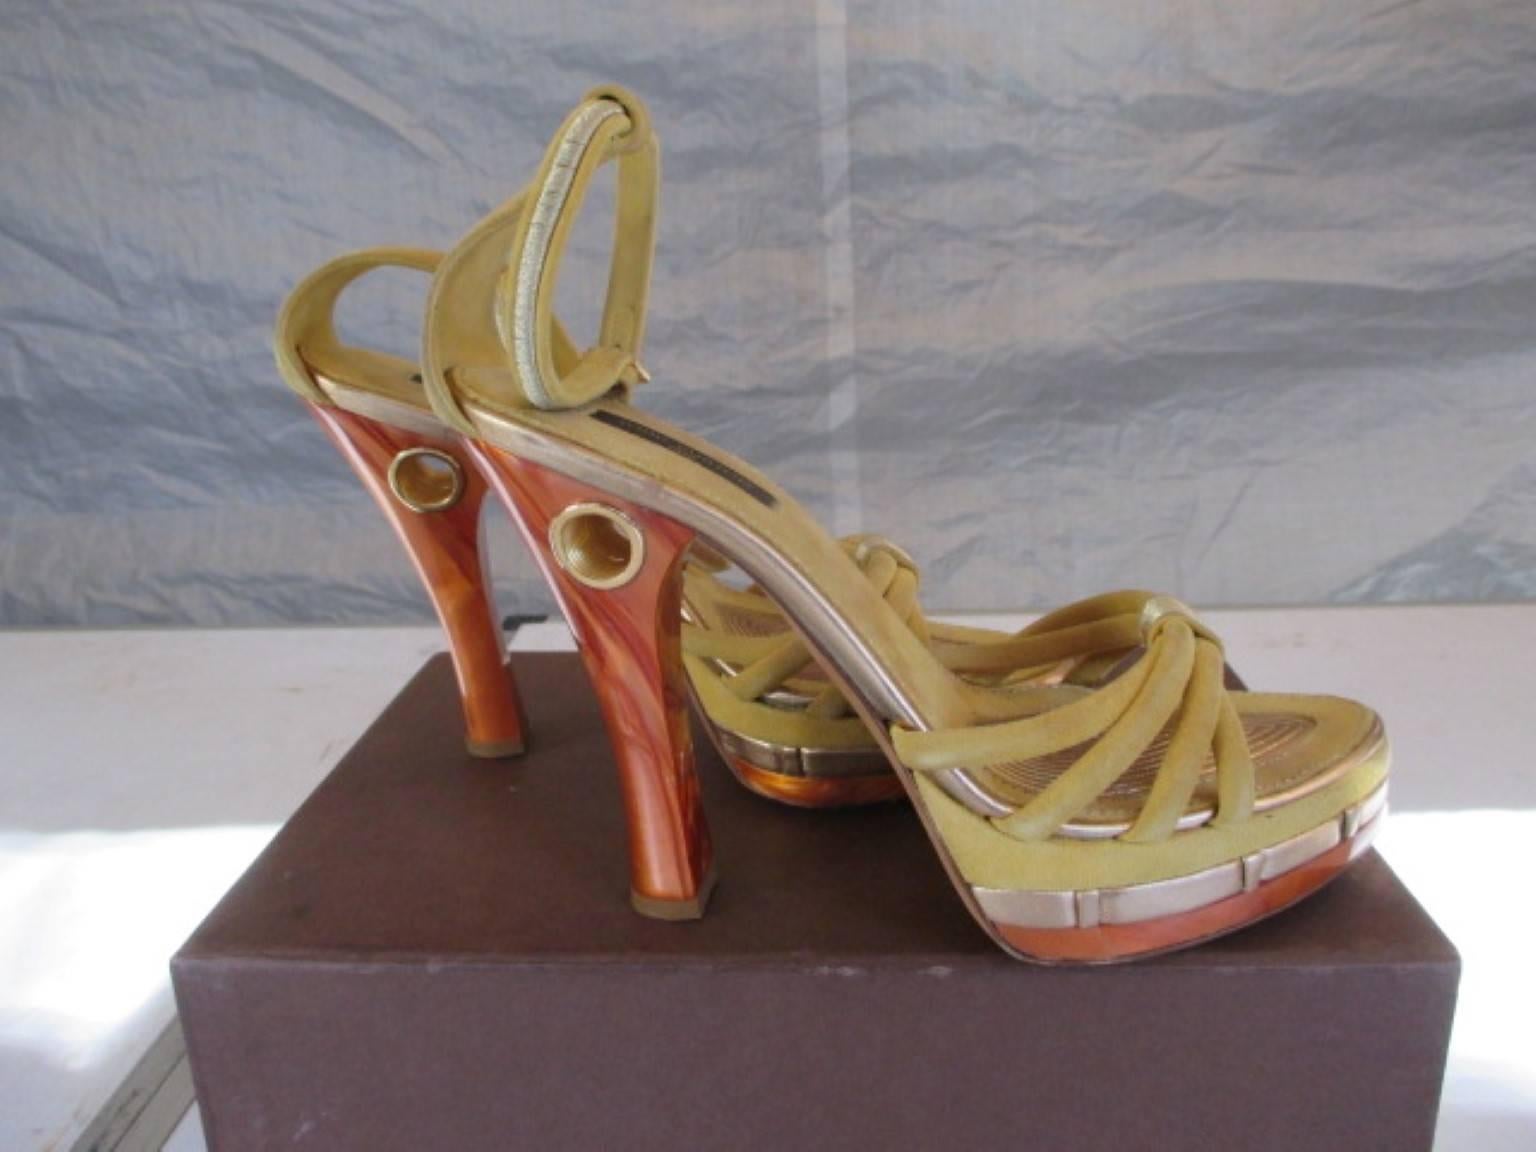 Authentische Louis Vuitton Sandalen aus gelbem Wildleder und goldenem Leder Cleo Pompeii in limitierter Auflage. 

Wir bieten weitere exklusive Vintage-Artikel an, siehe unseren Frontstore

Einzelheiten:
Mit offener Zehenpartie, Akzenten aus